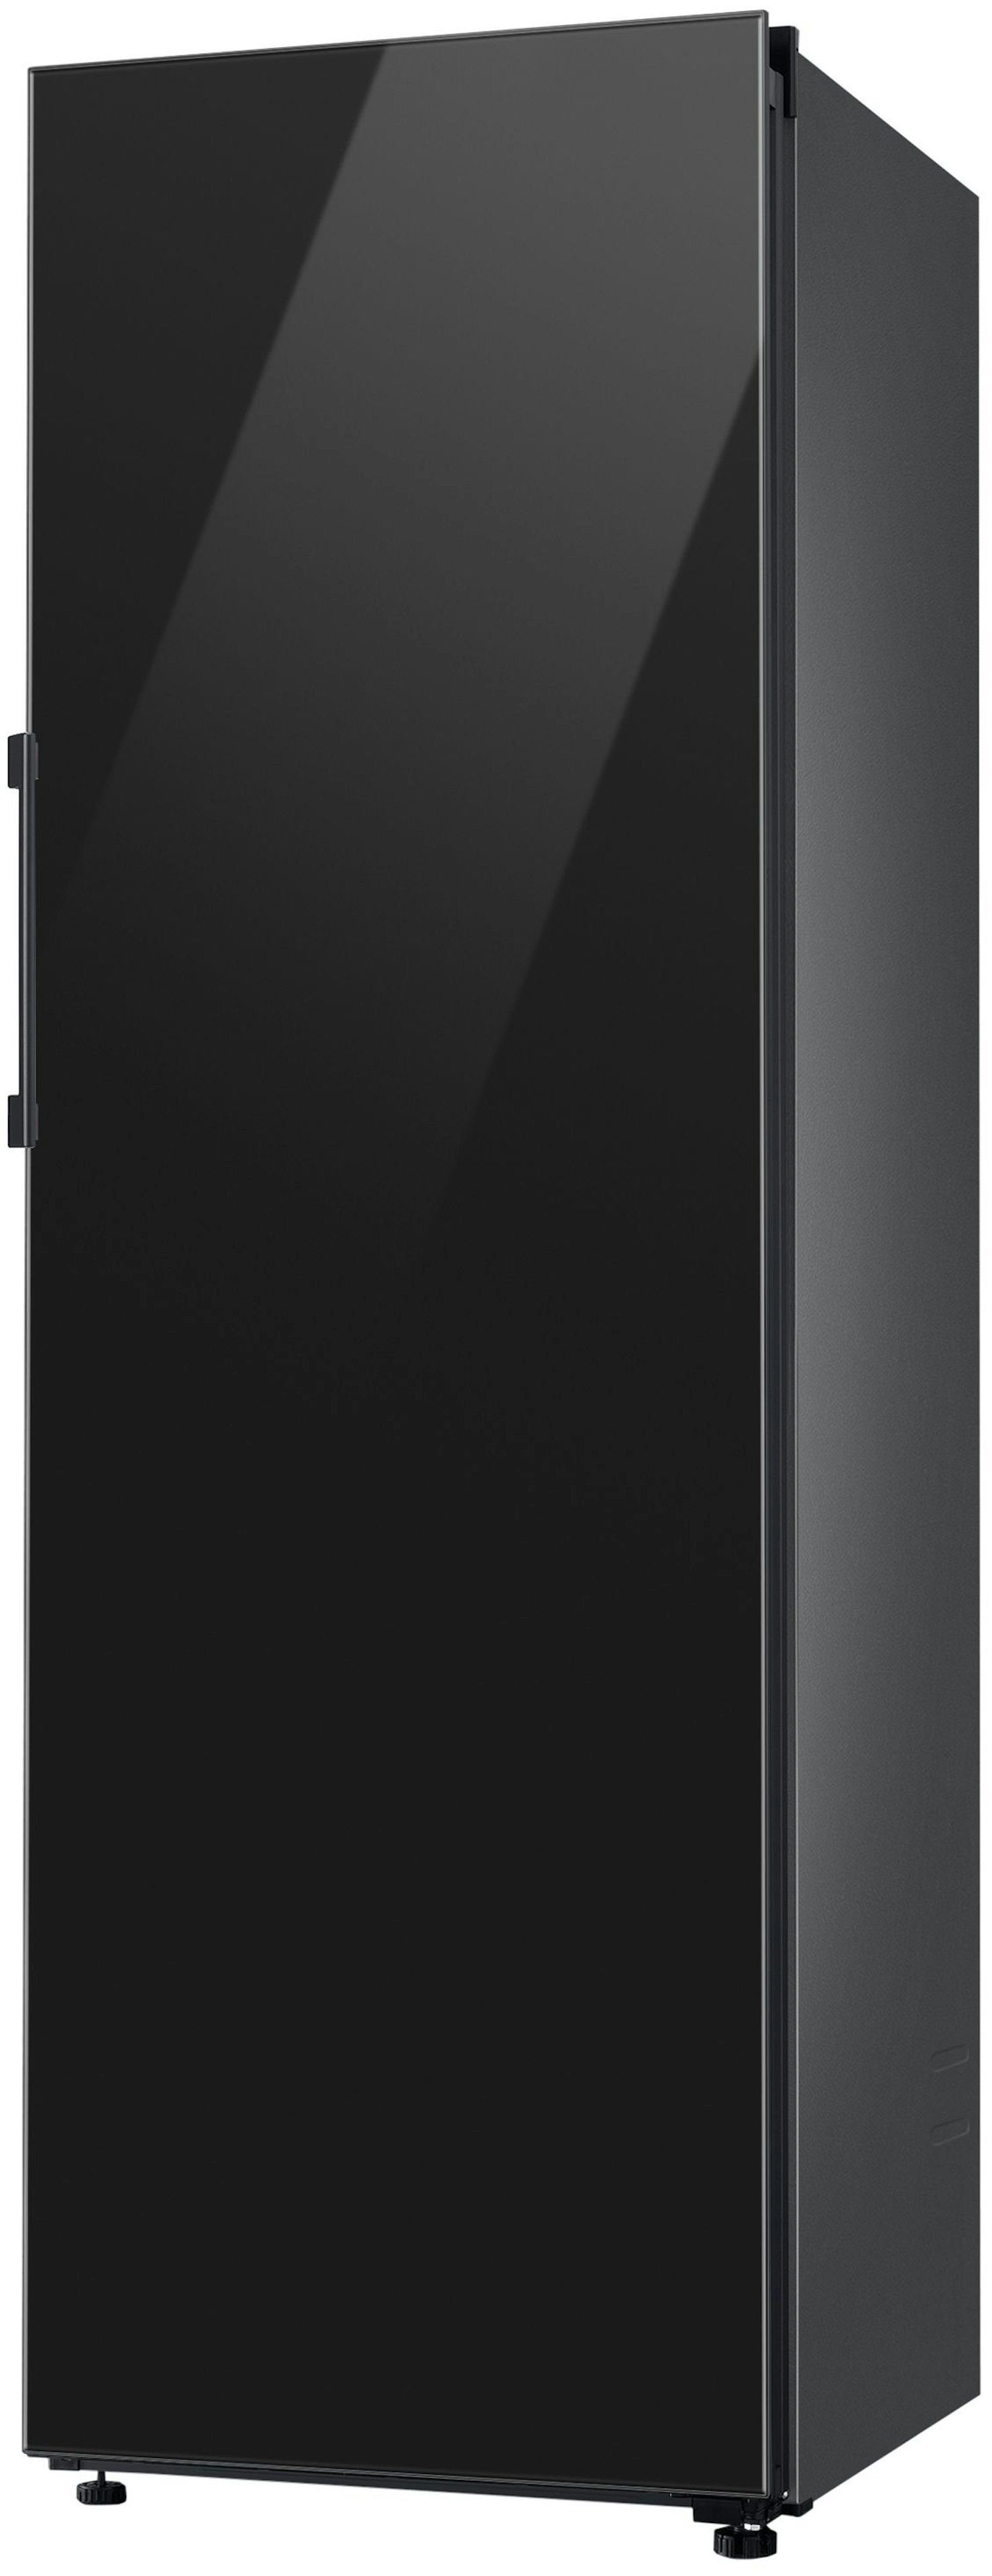 Samsung RR39C76C322/EF vrijstaand koelkast afbeelding 6